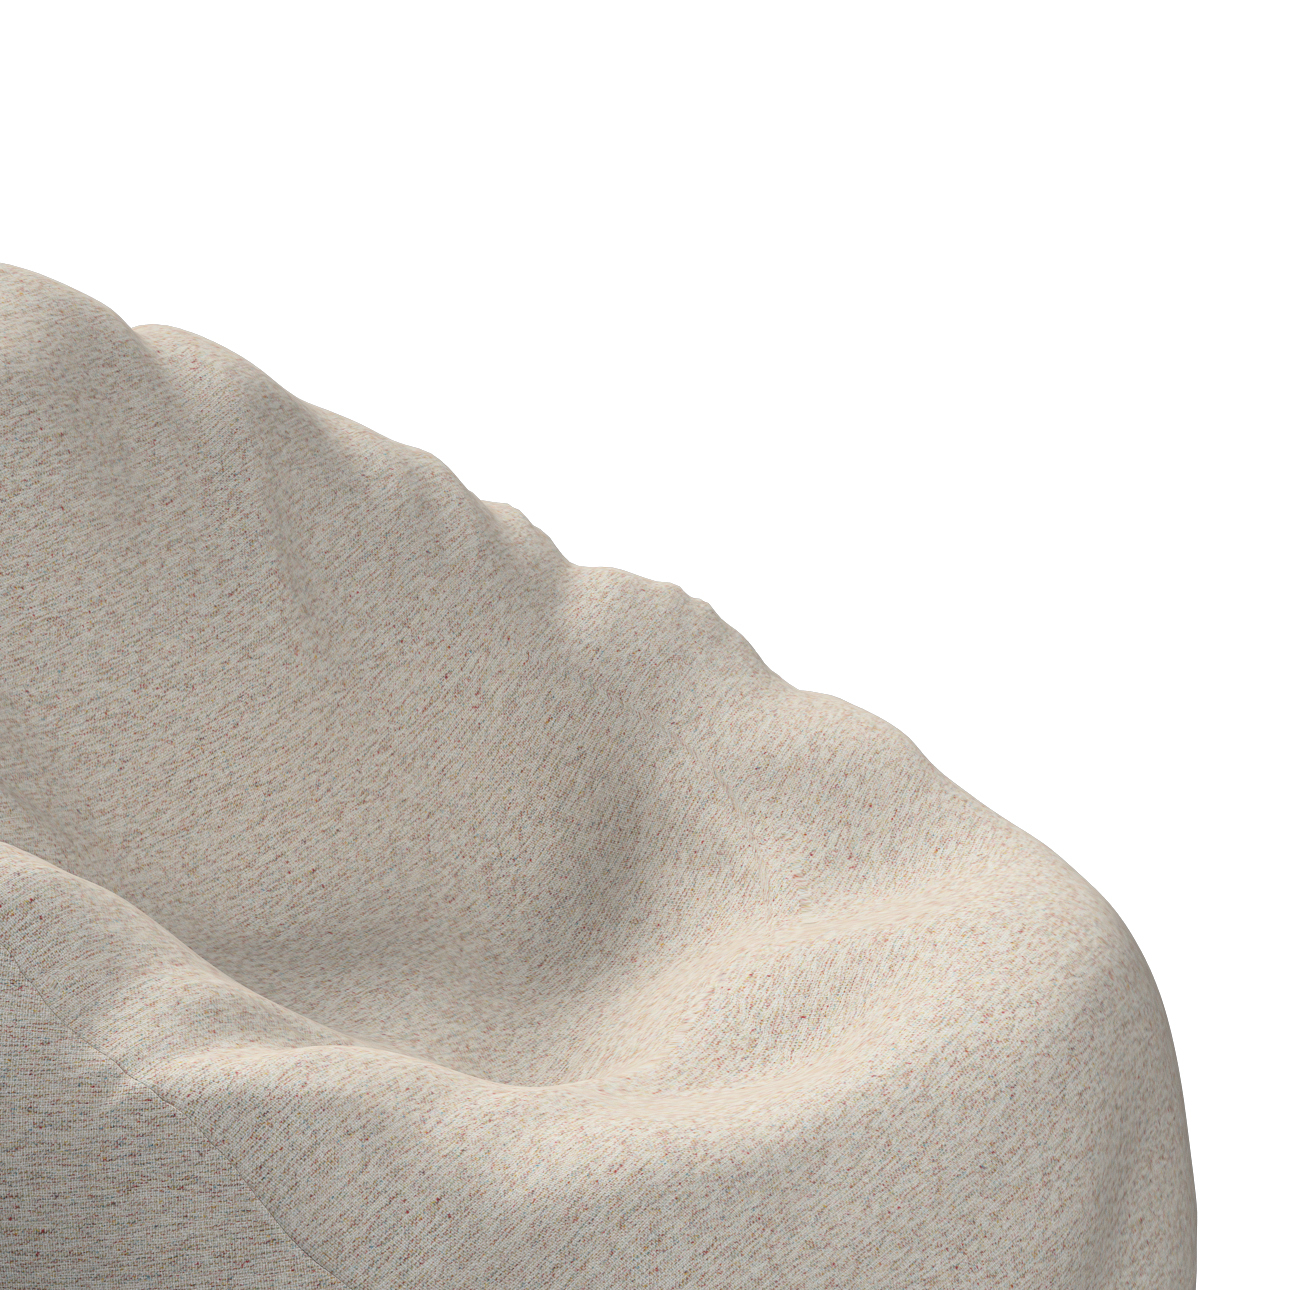 Bezug für Sitzsack, grau-beige, Bezug für Sitzsack Ø50 x 85 cm, Madrid (162 günstig online kaufen